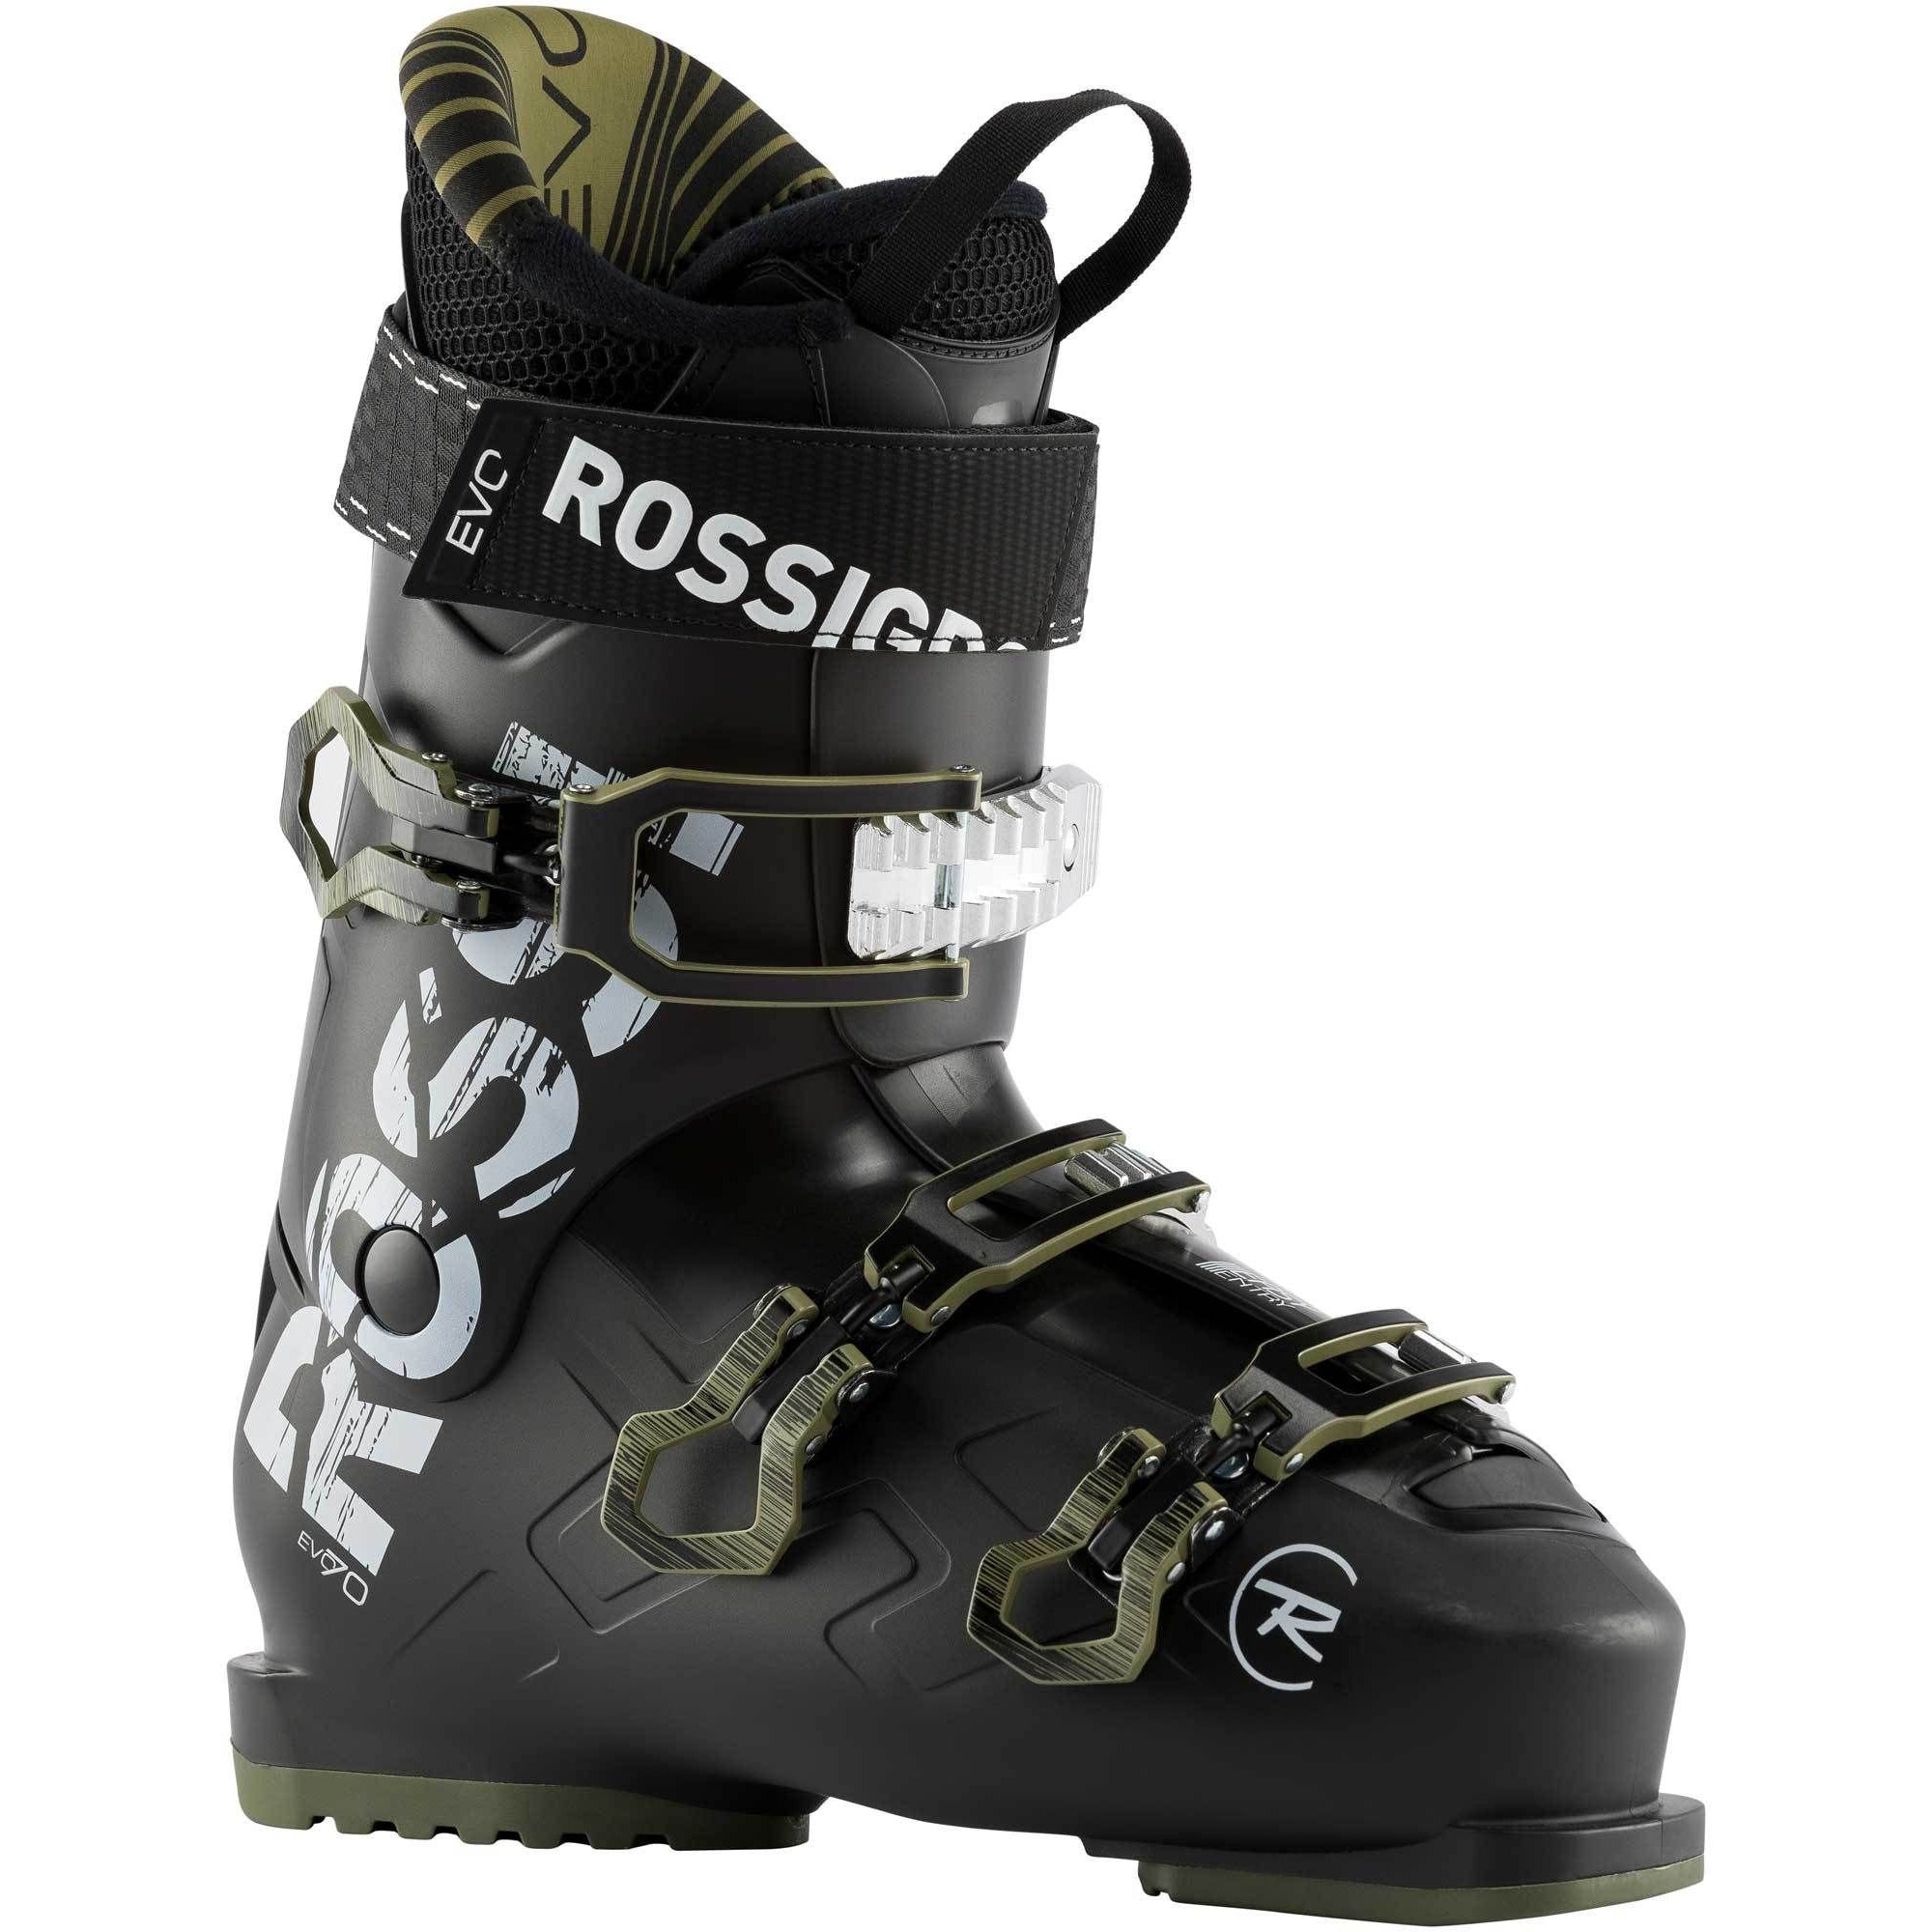 Rossignol 2022 Evo 70 Ski Boot